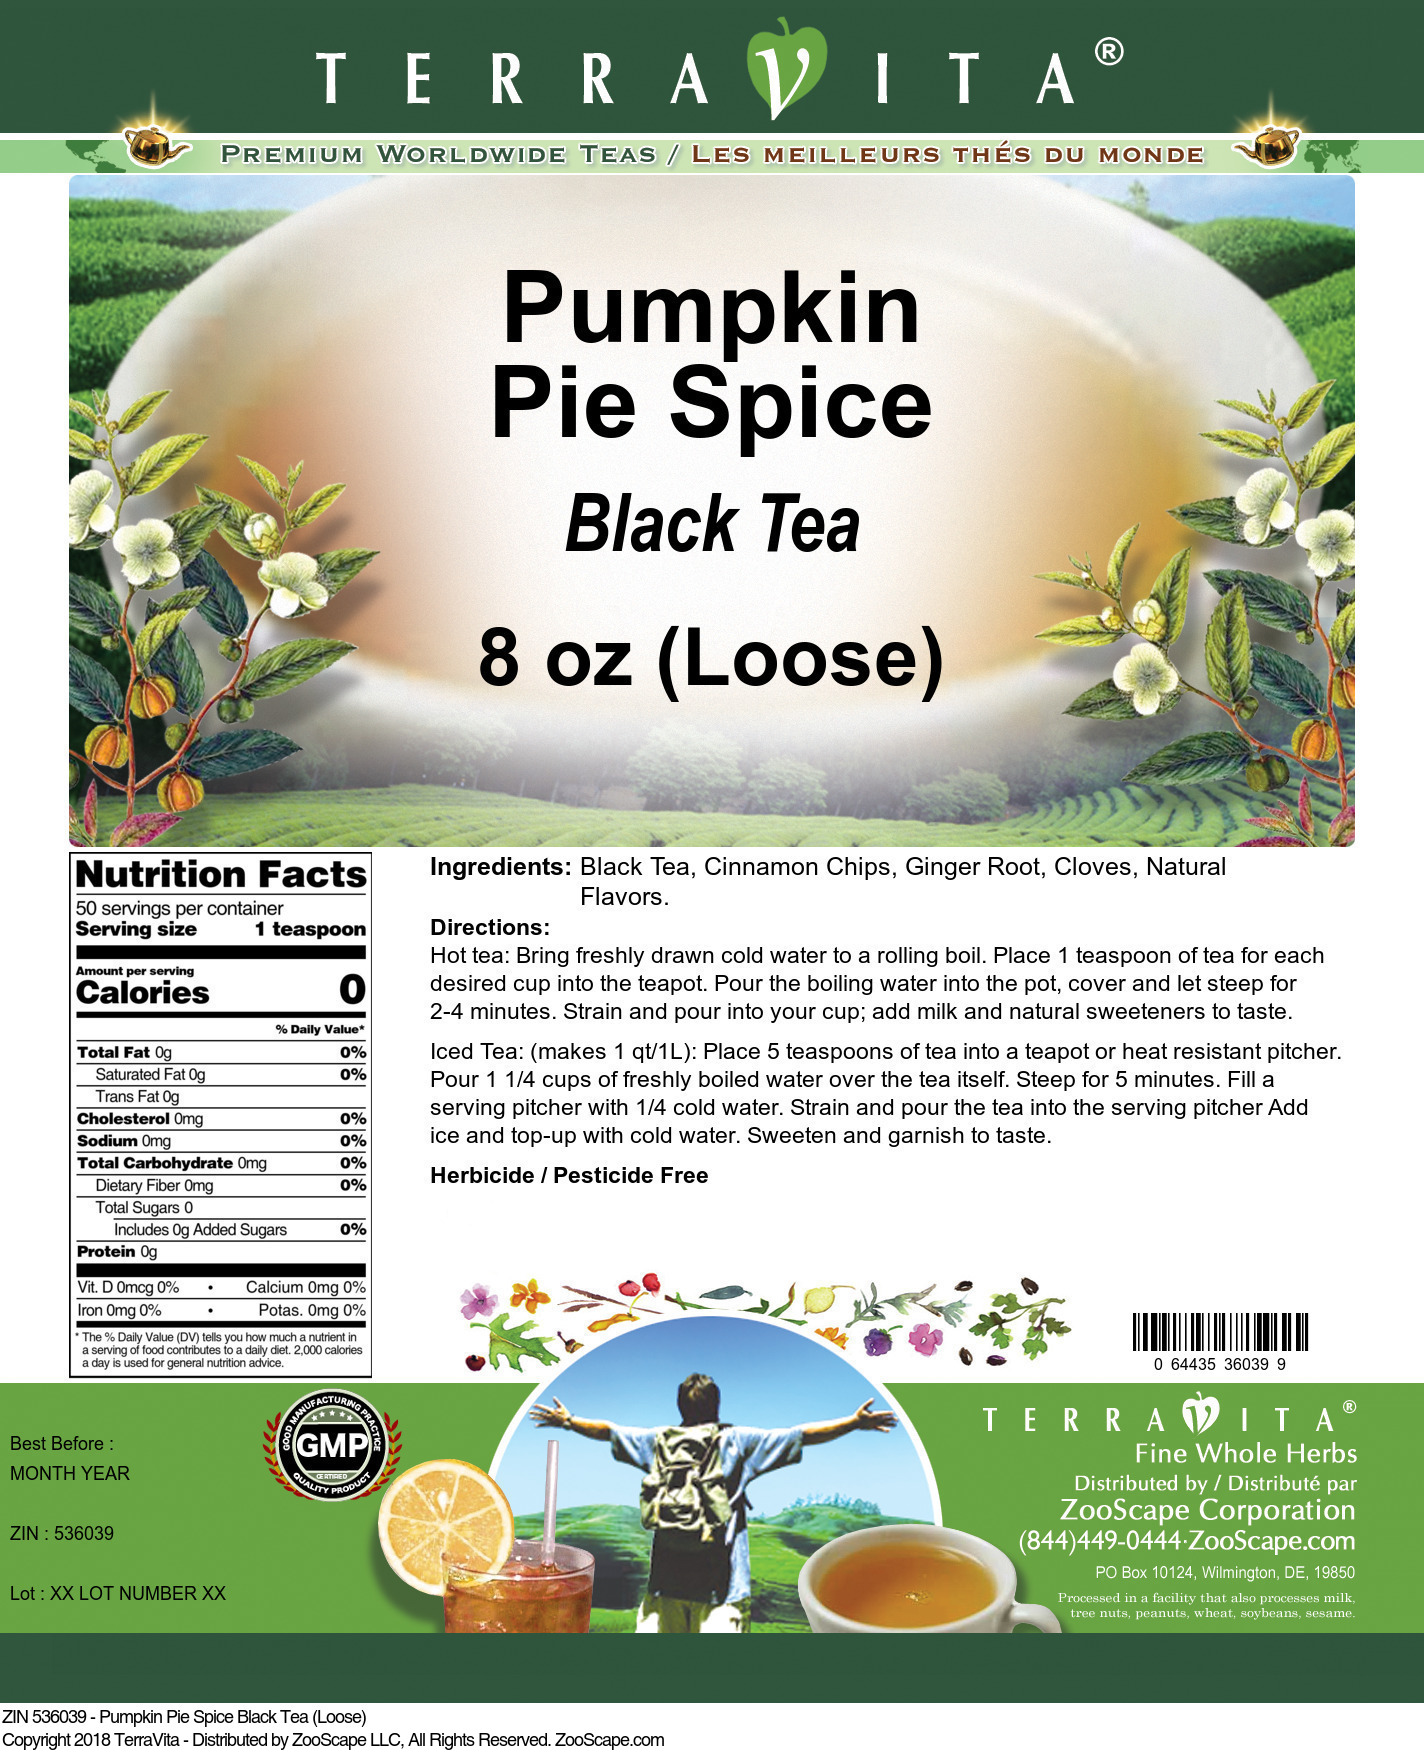 Pumpkin Pie Spice Black Tea (Loose) - Label